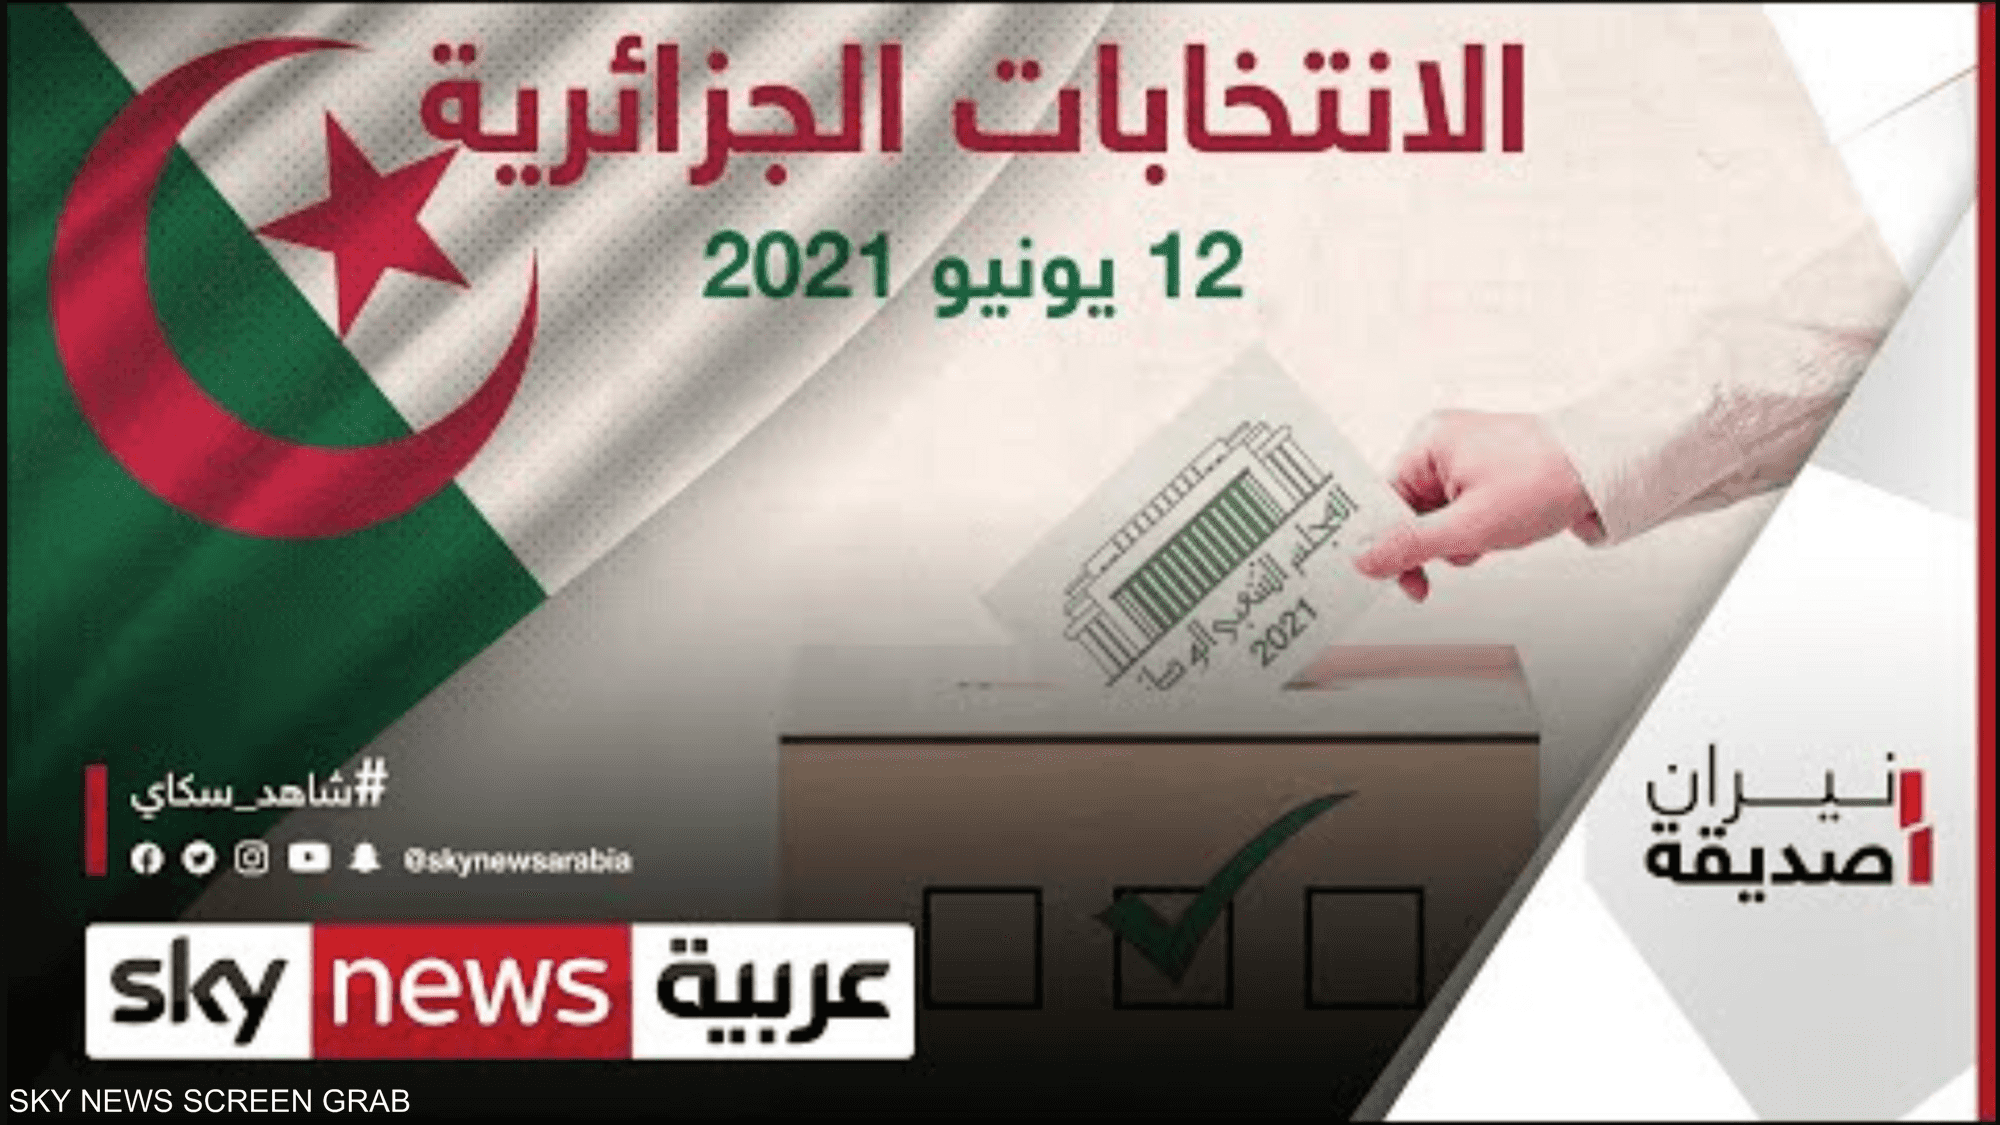 هل تنجح الانتخابات الجزائرية بتحقيق التغيير المنشود؟